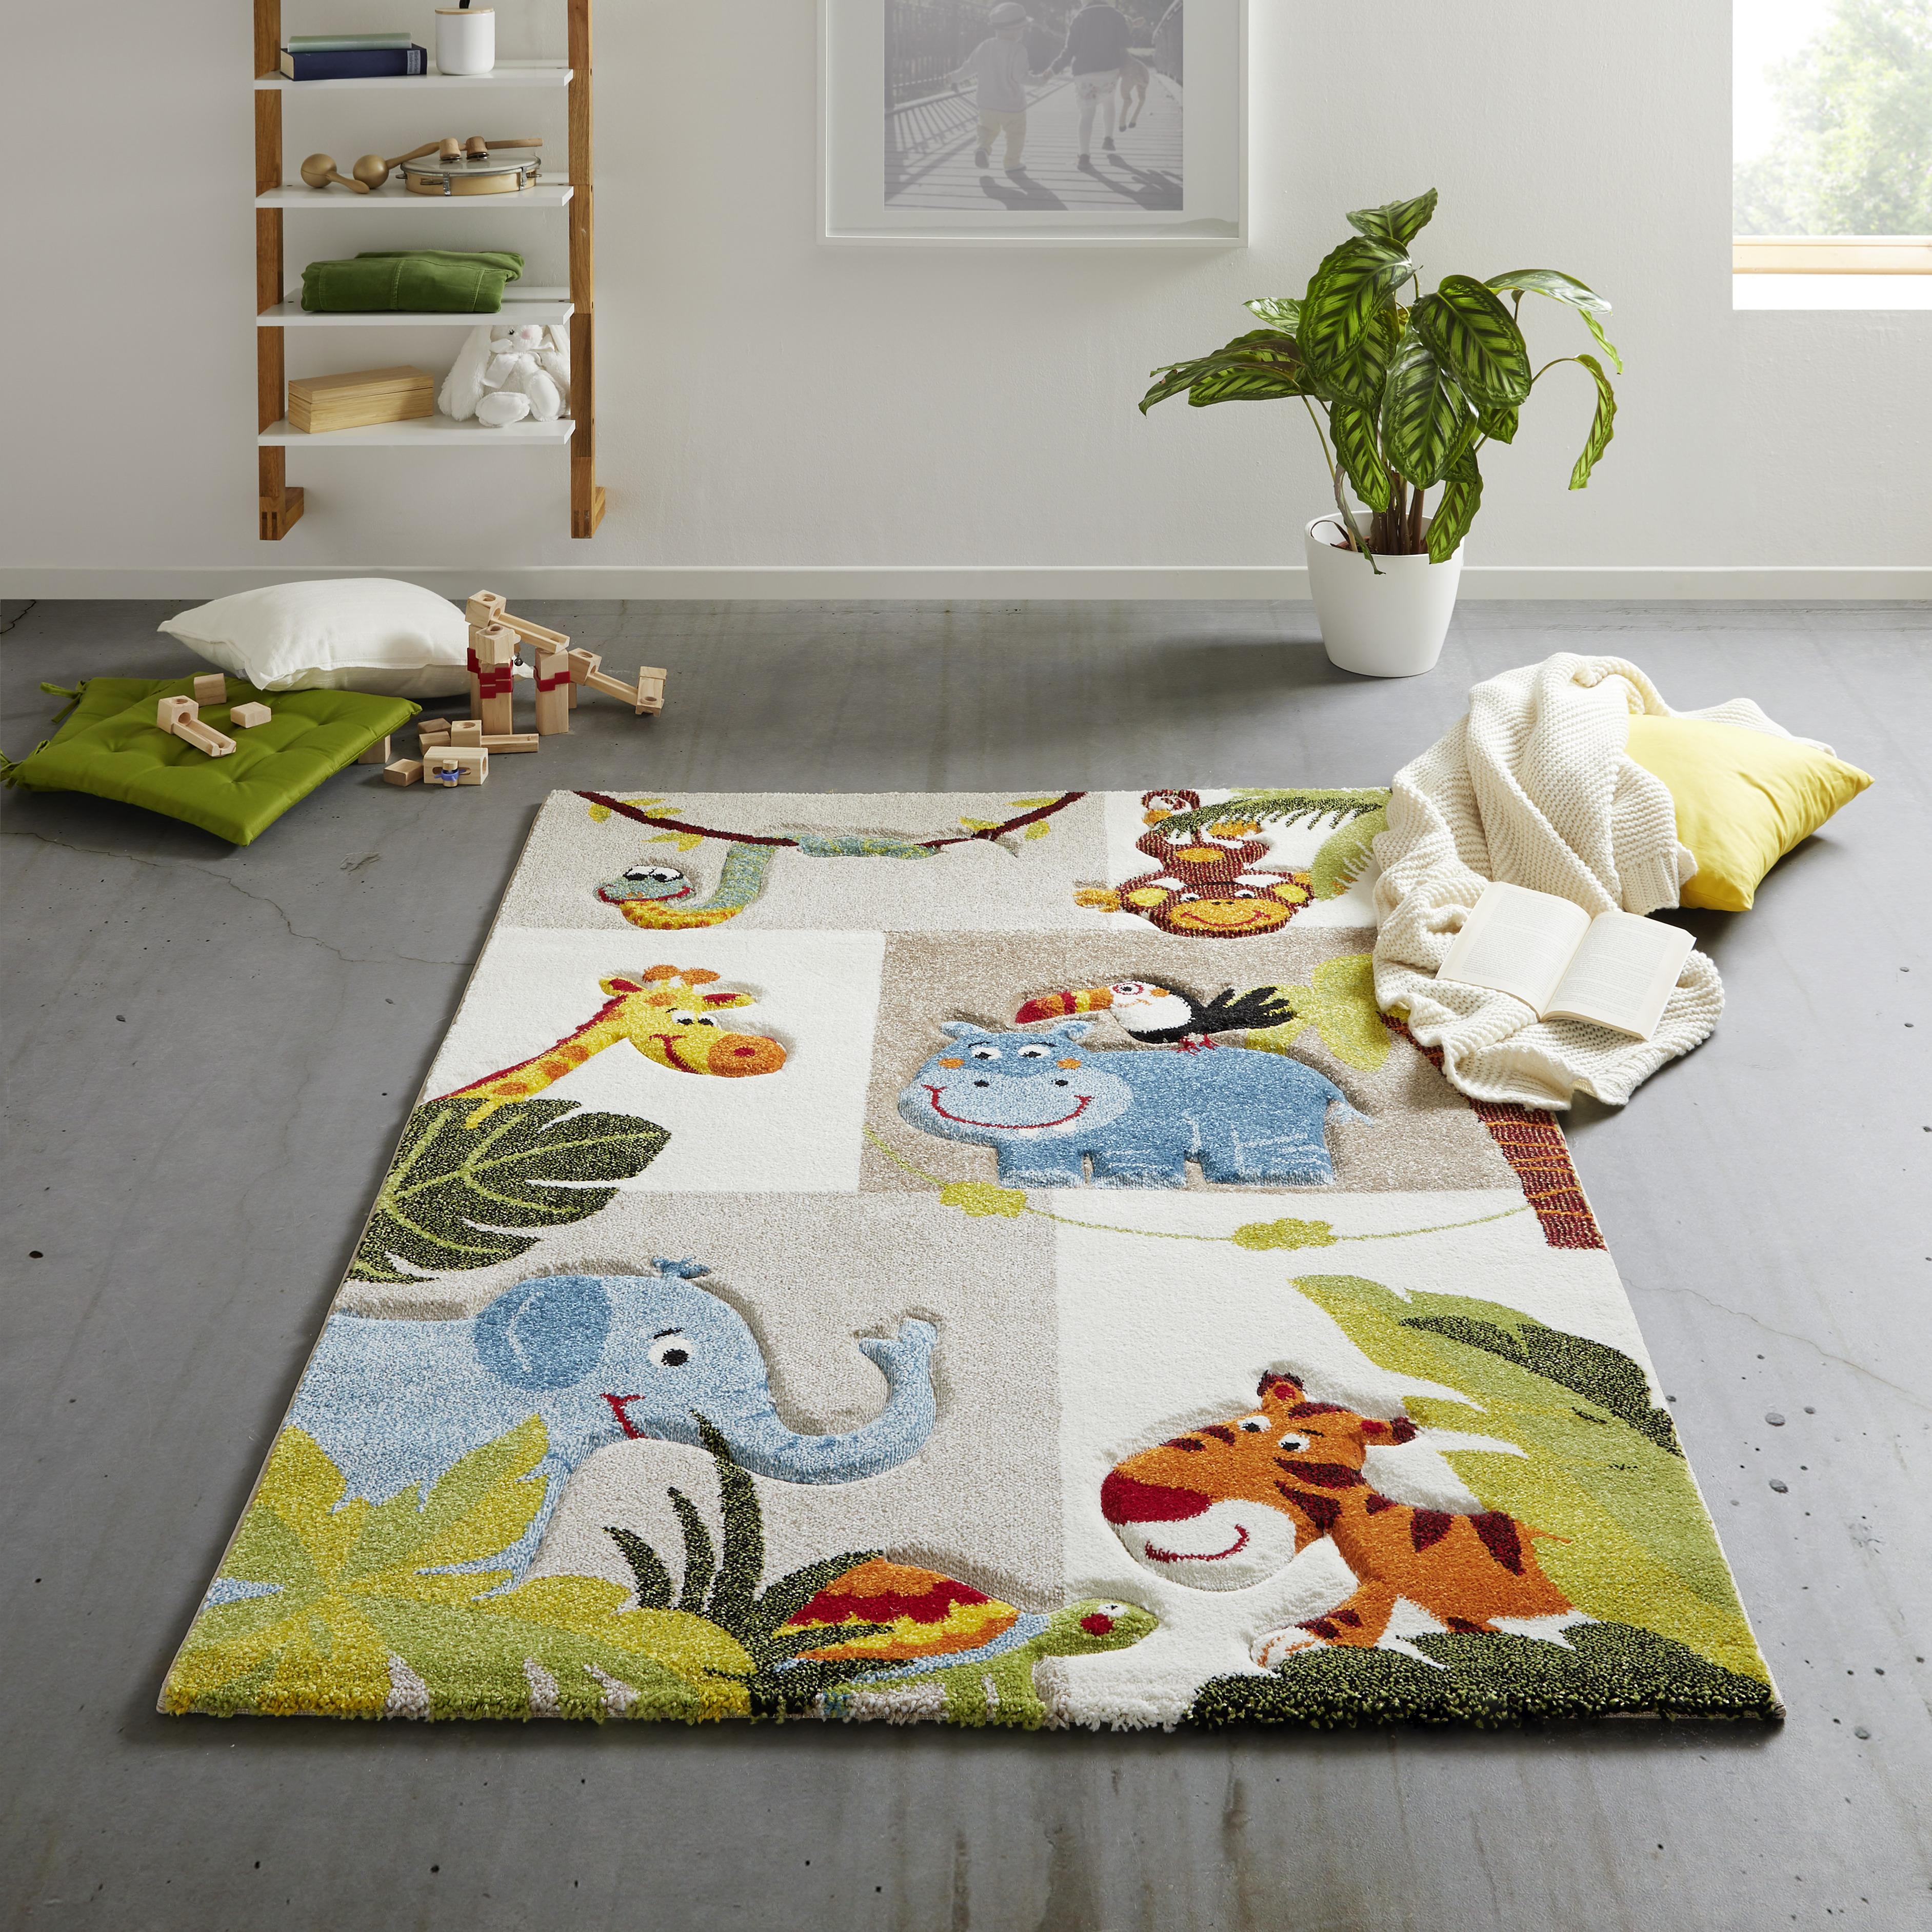 Dětský Koberec Jungle, 120/170cm - vícebarevná, textil (120/170cm) - Modern Living